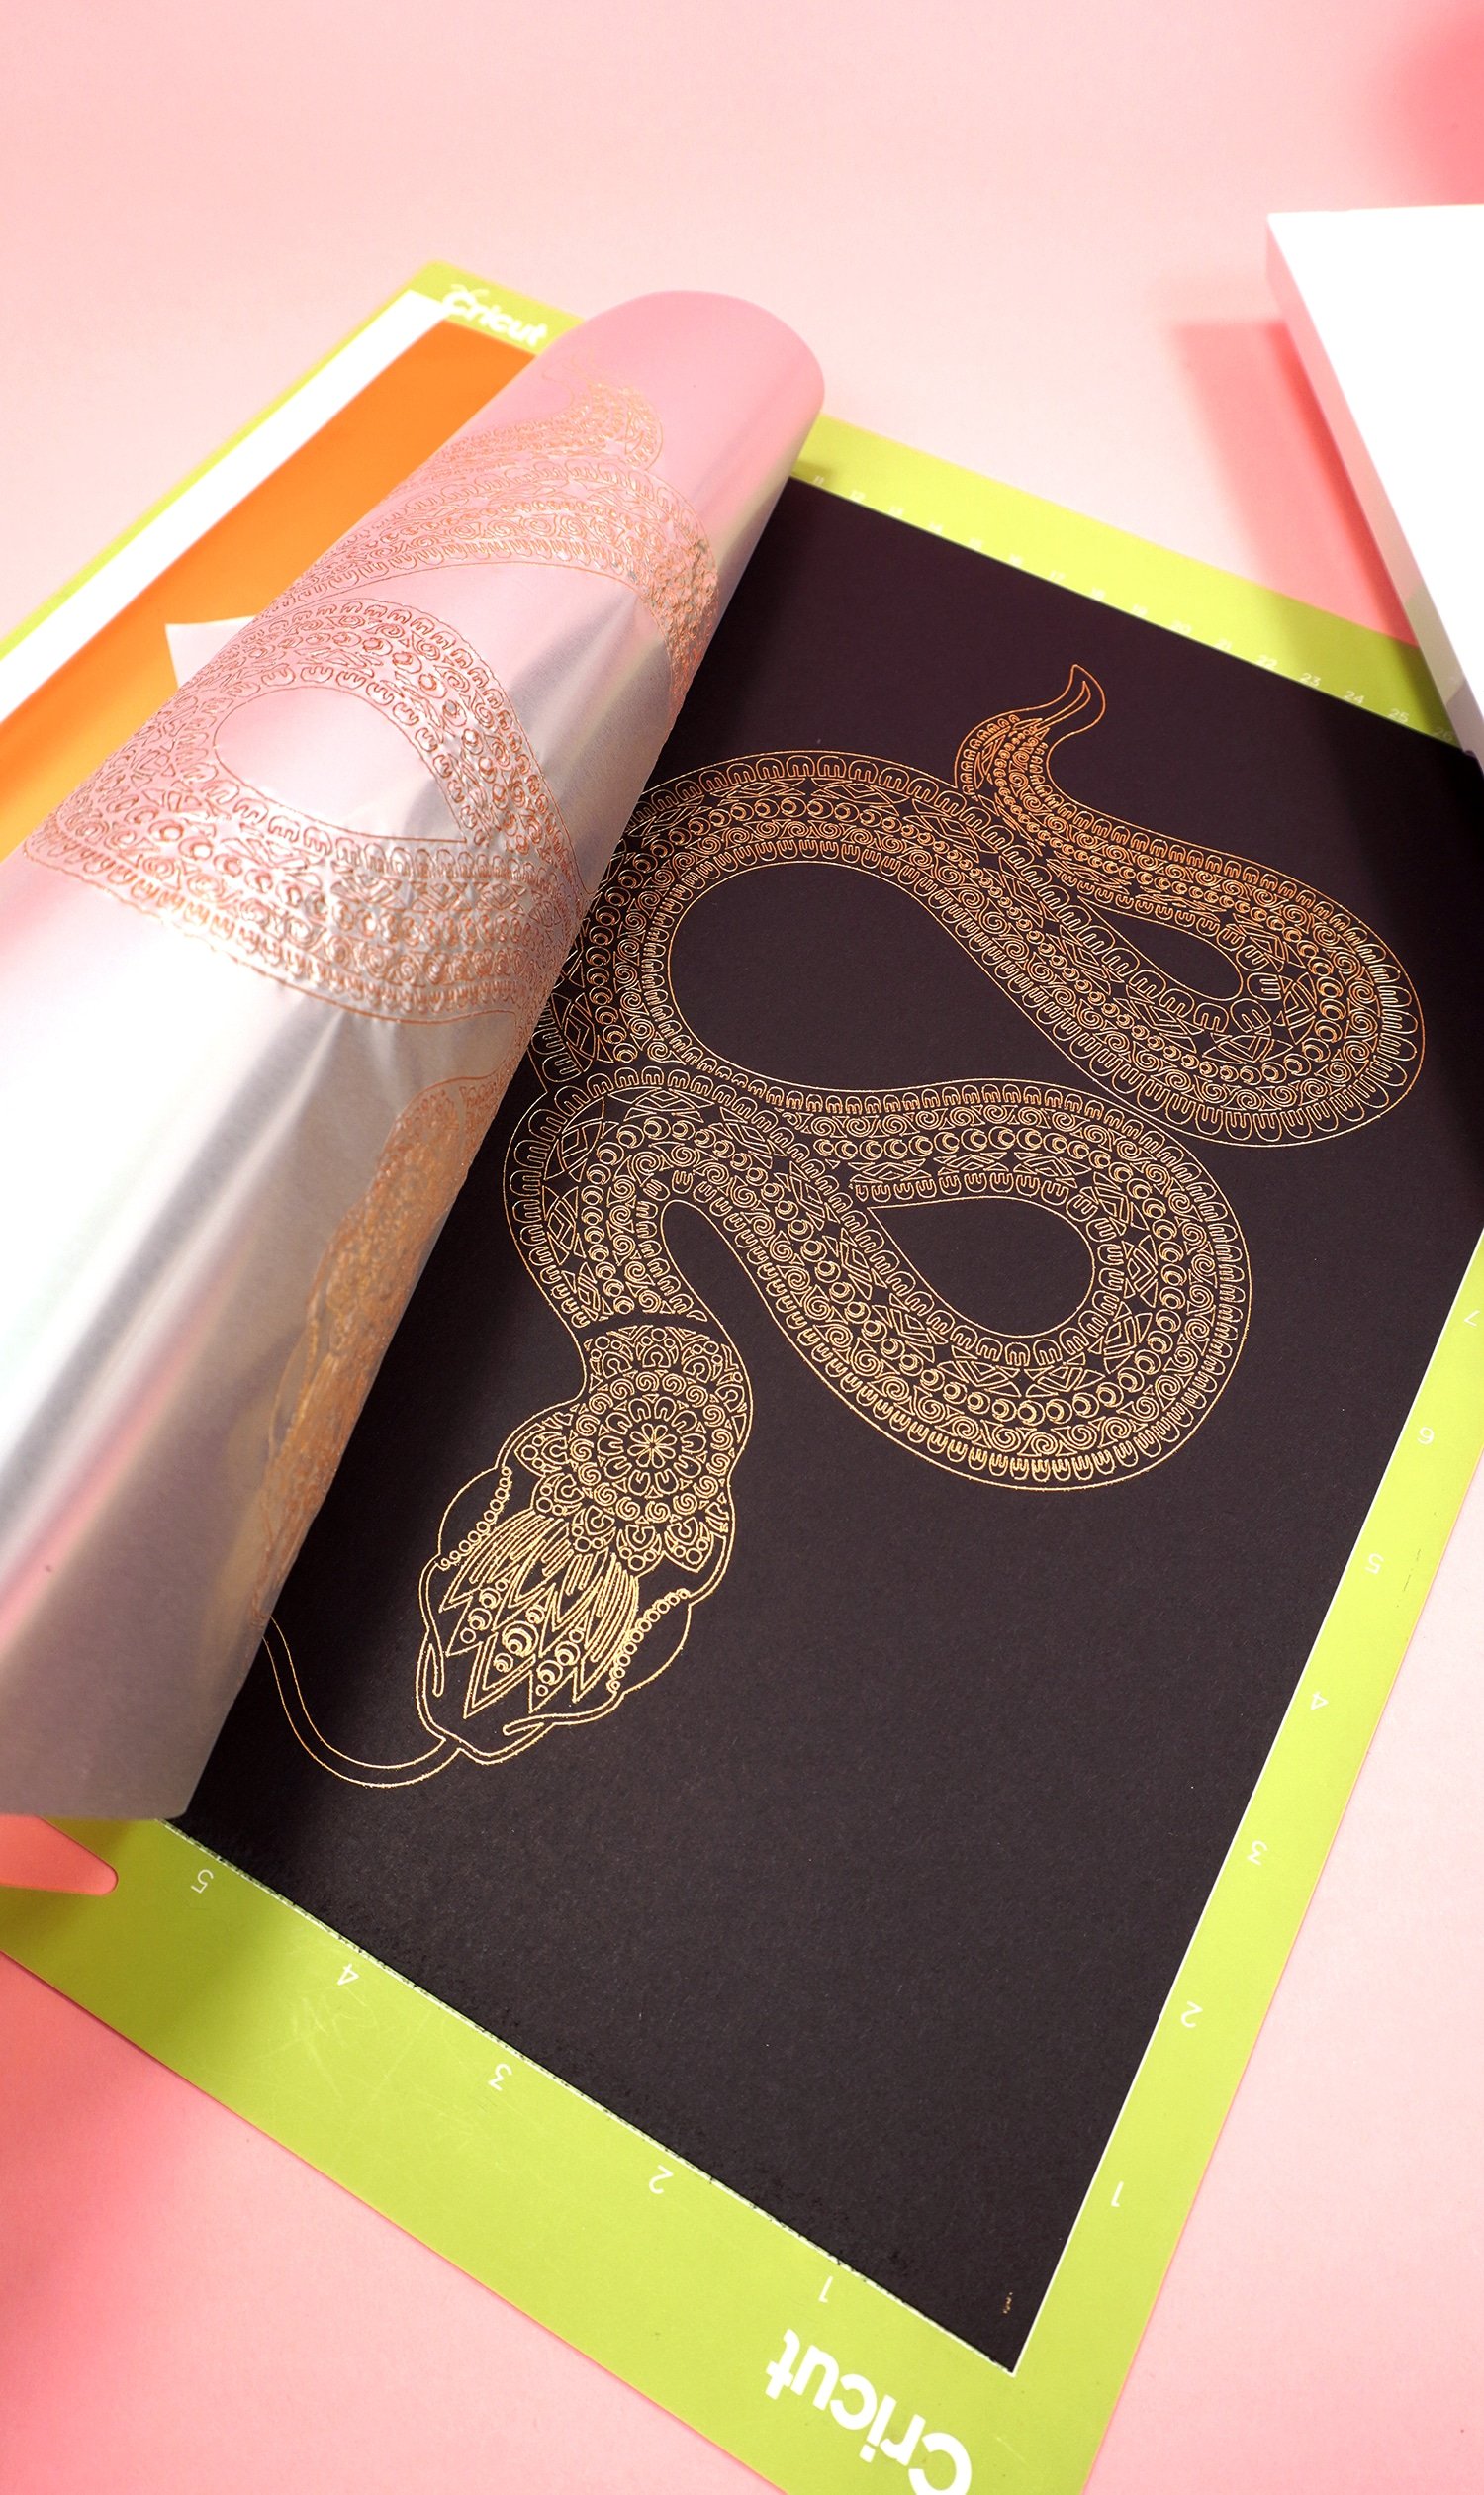 Peeling back gold foil transfer sheet to reveal gold foil art print of a snake